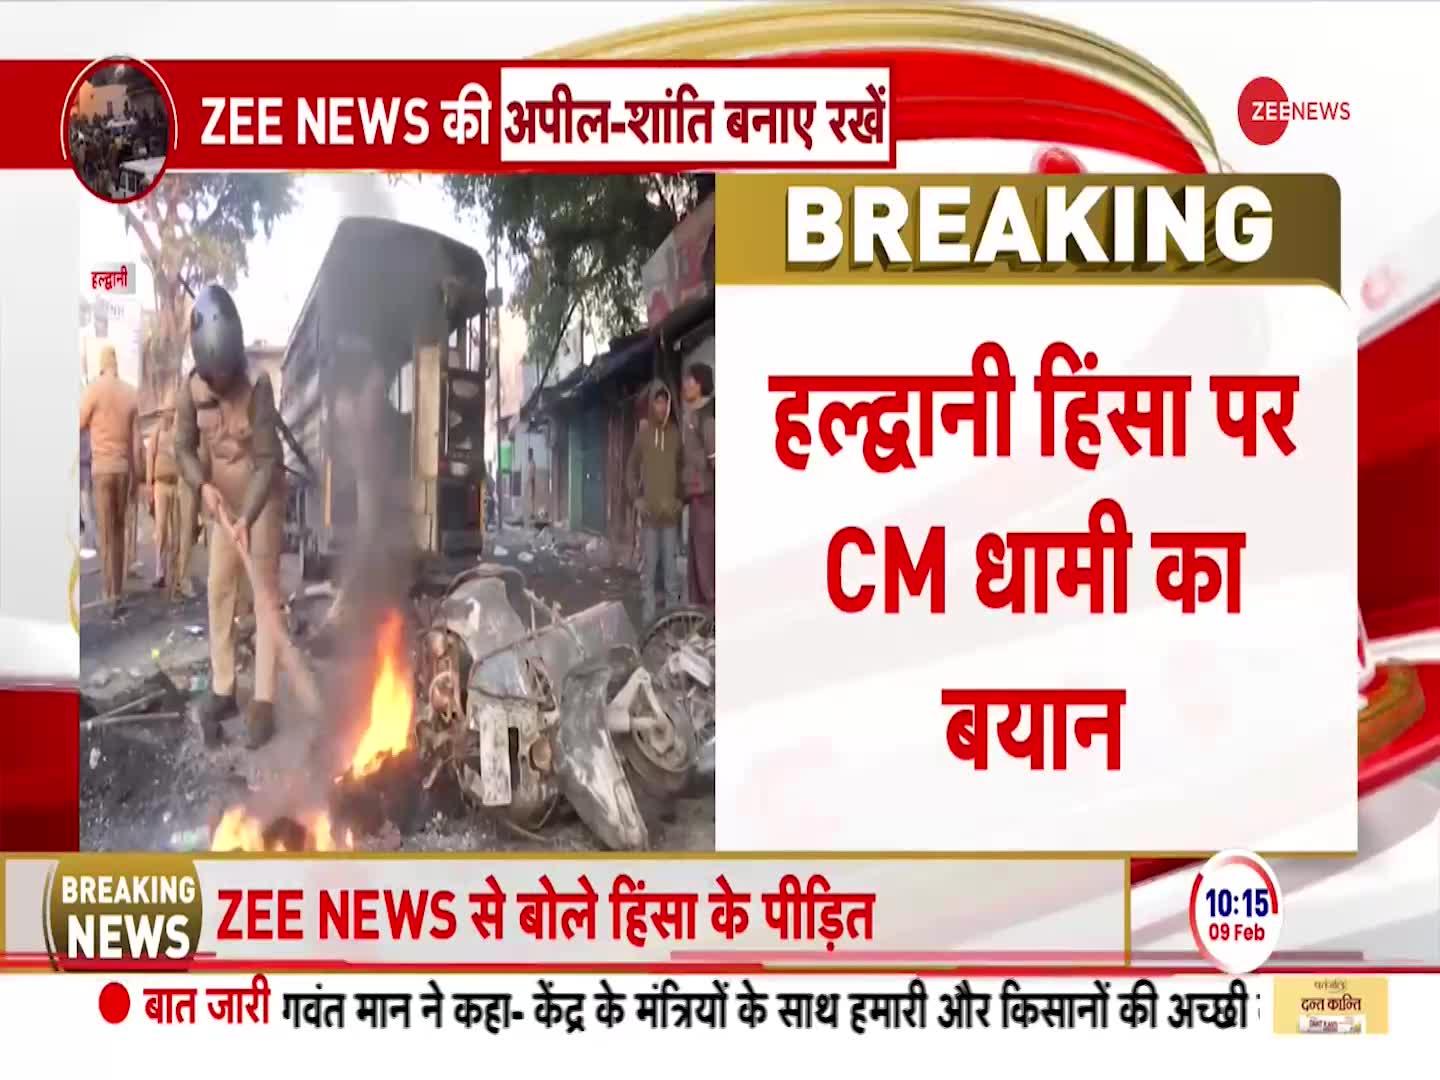 CM Dhami on Haldwani Violence: दंगाइयों पर कठोर कार्रवाई करेंगे- CM धामी